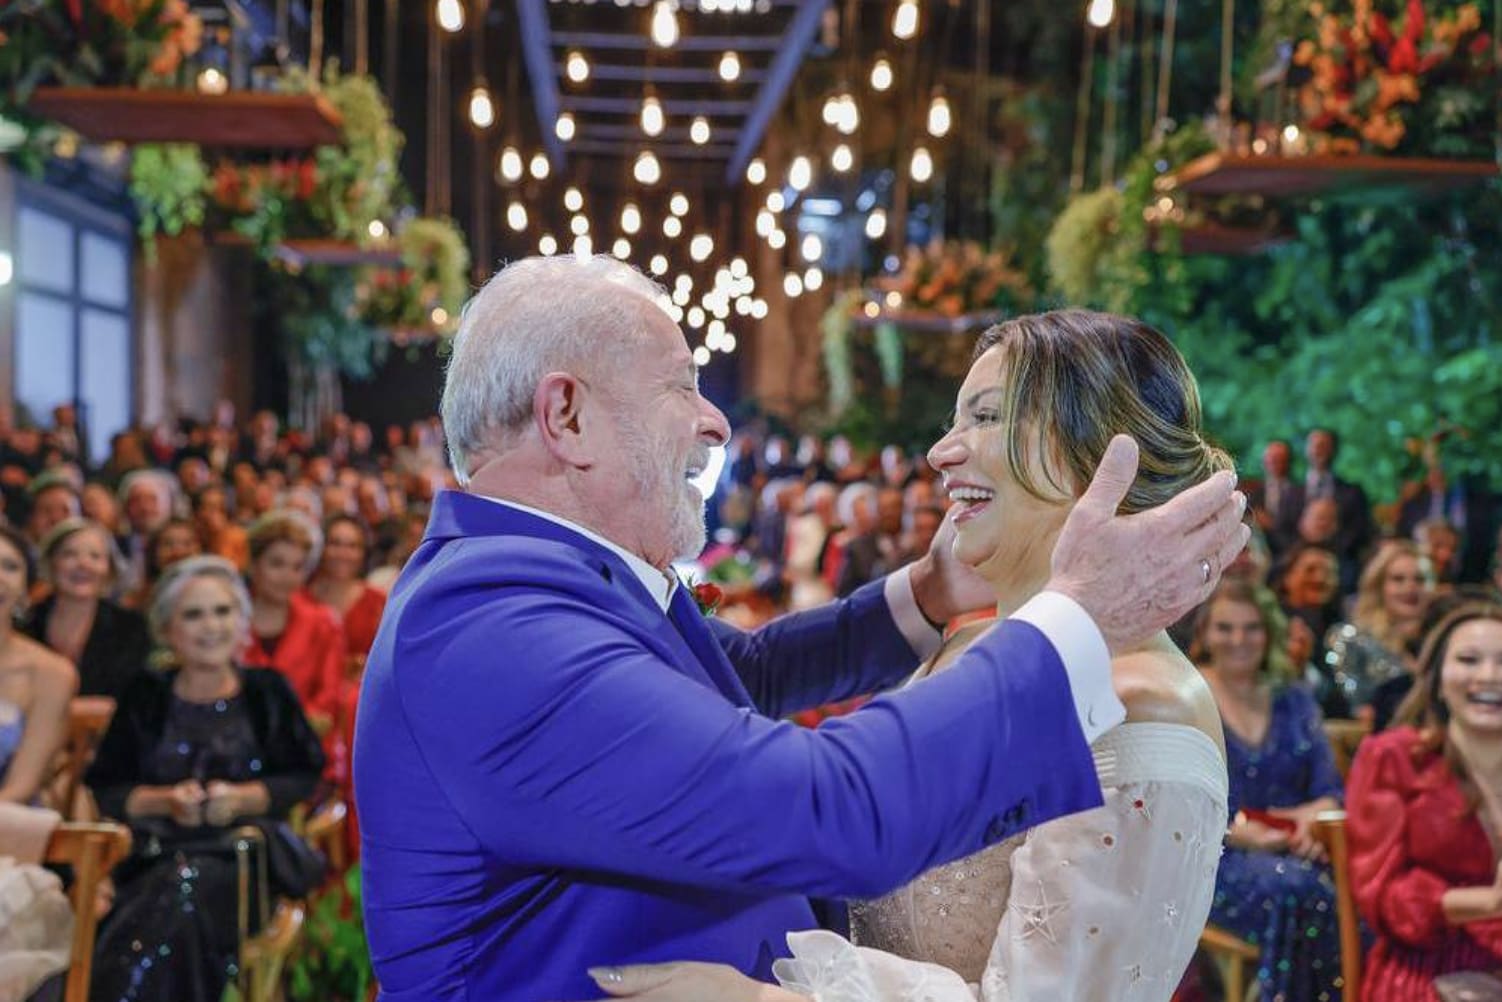 Lula e Janja se casam em São Paulo